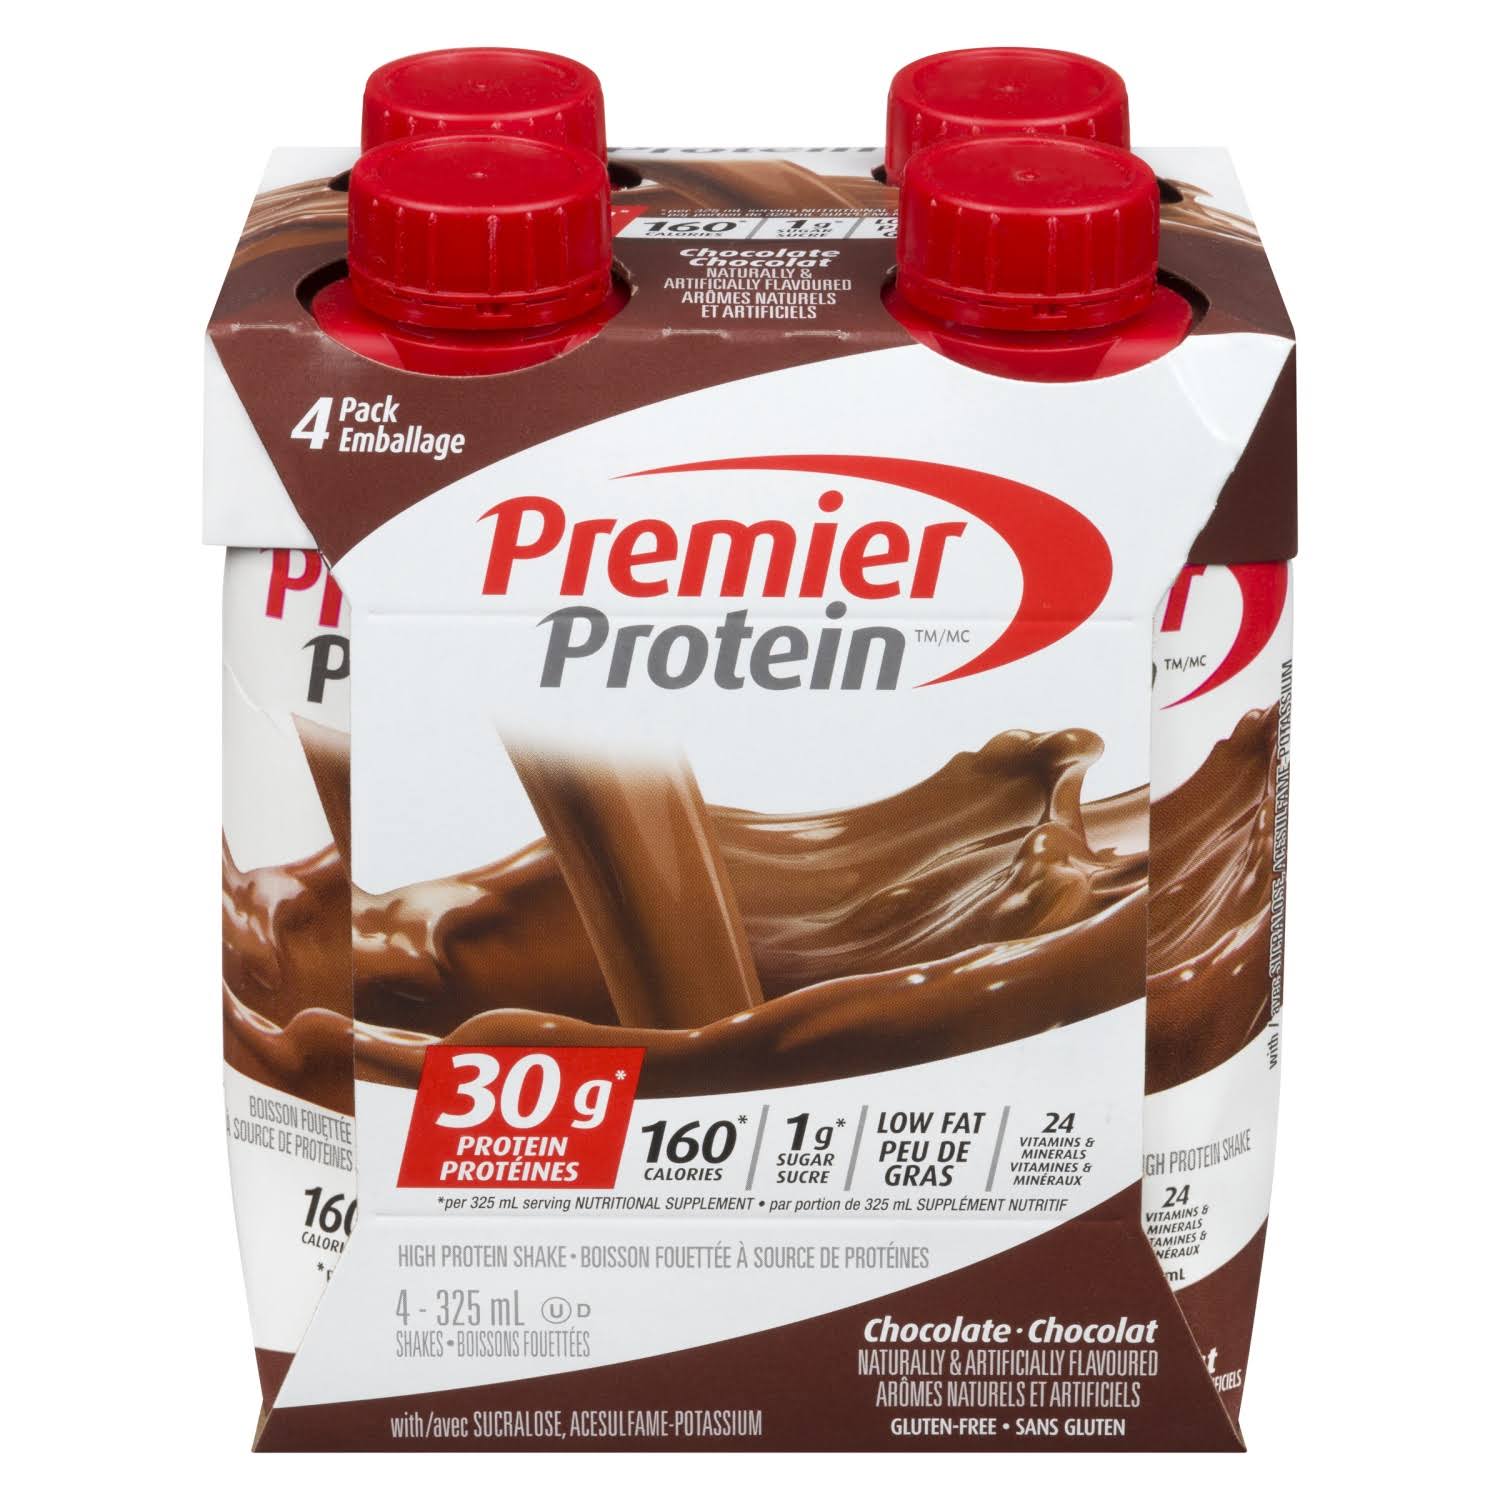 Premier Protein Chocolate Shake 325ml - 30g Protein, Low Sugar, 24 Vitamins & Minerals